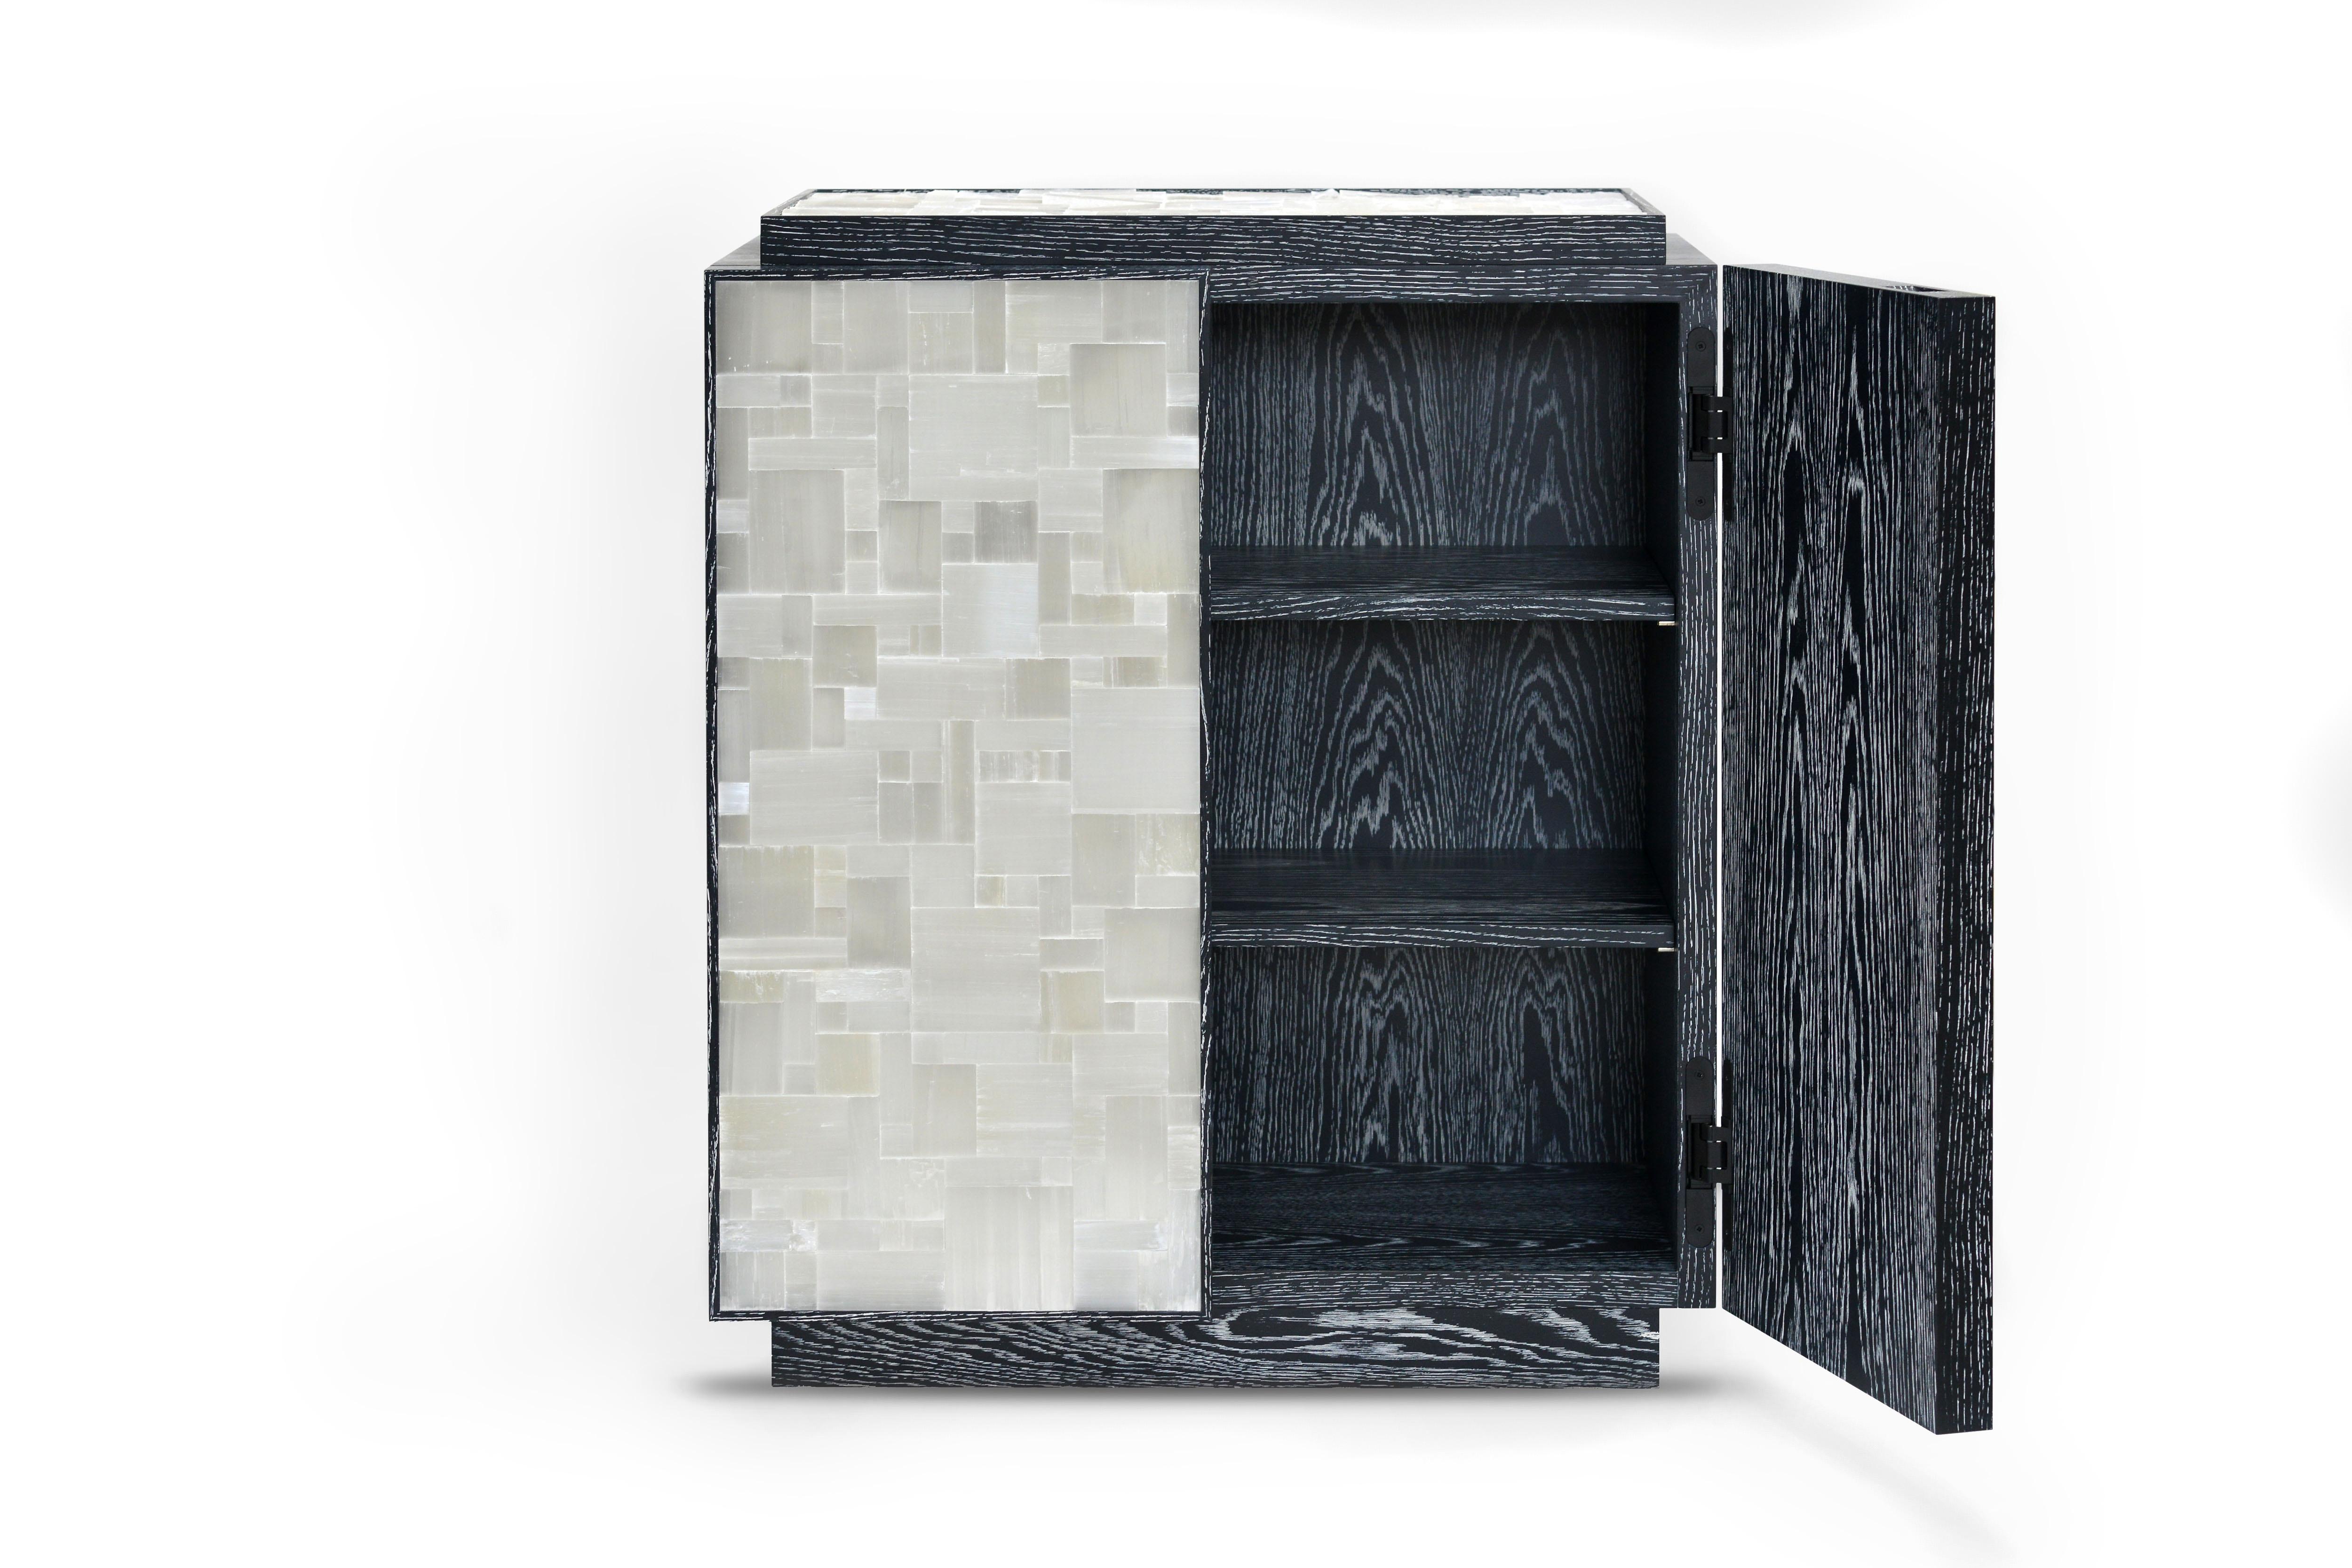 Der von Simon Stewart für Masterpiece 2019 entworfene Plexus-Schrank kombiniert schwarze Keramik mit mosaikartigen Seleniteinlagen in den Türen und im Deckel. 

Schlichtes Innenleben mit zwei Einlegeböden aus gebrannter Eiche. Die Türen sind mit